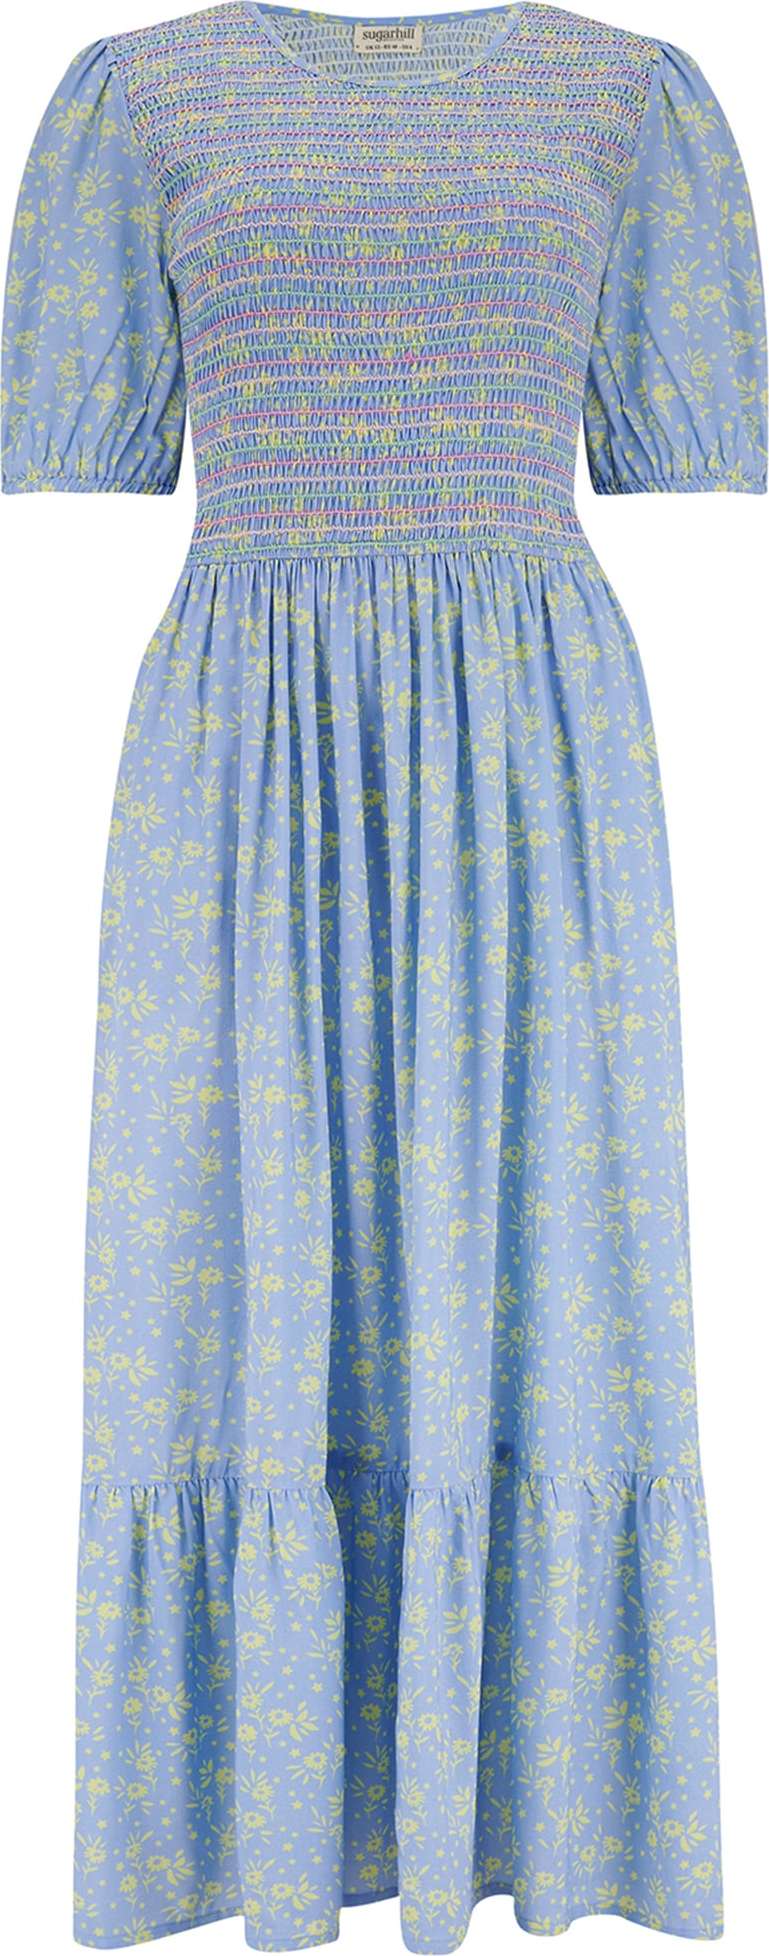 Sugarhill Brighton Šaty nebeská modř / světle žlutá / broskvová / světle růžová